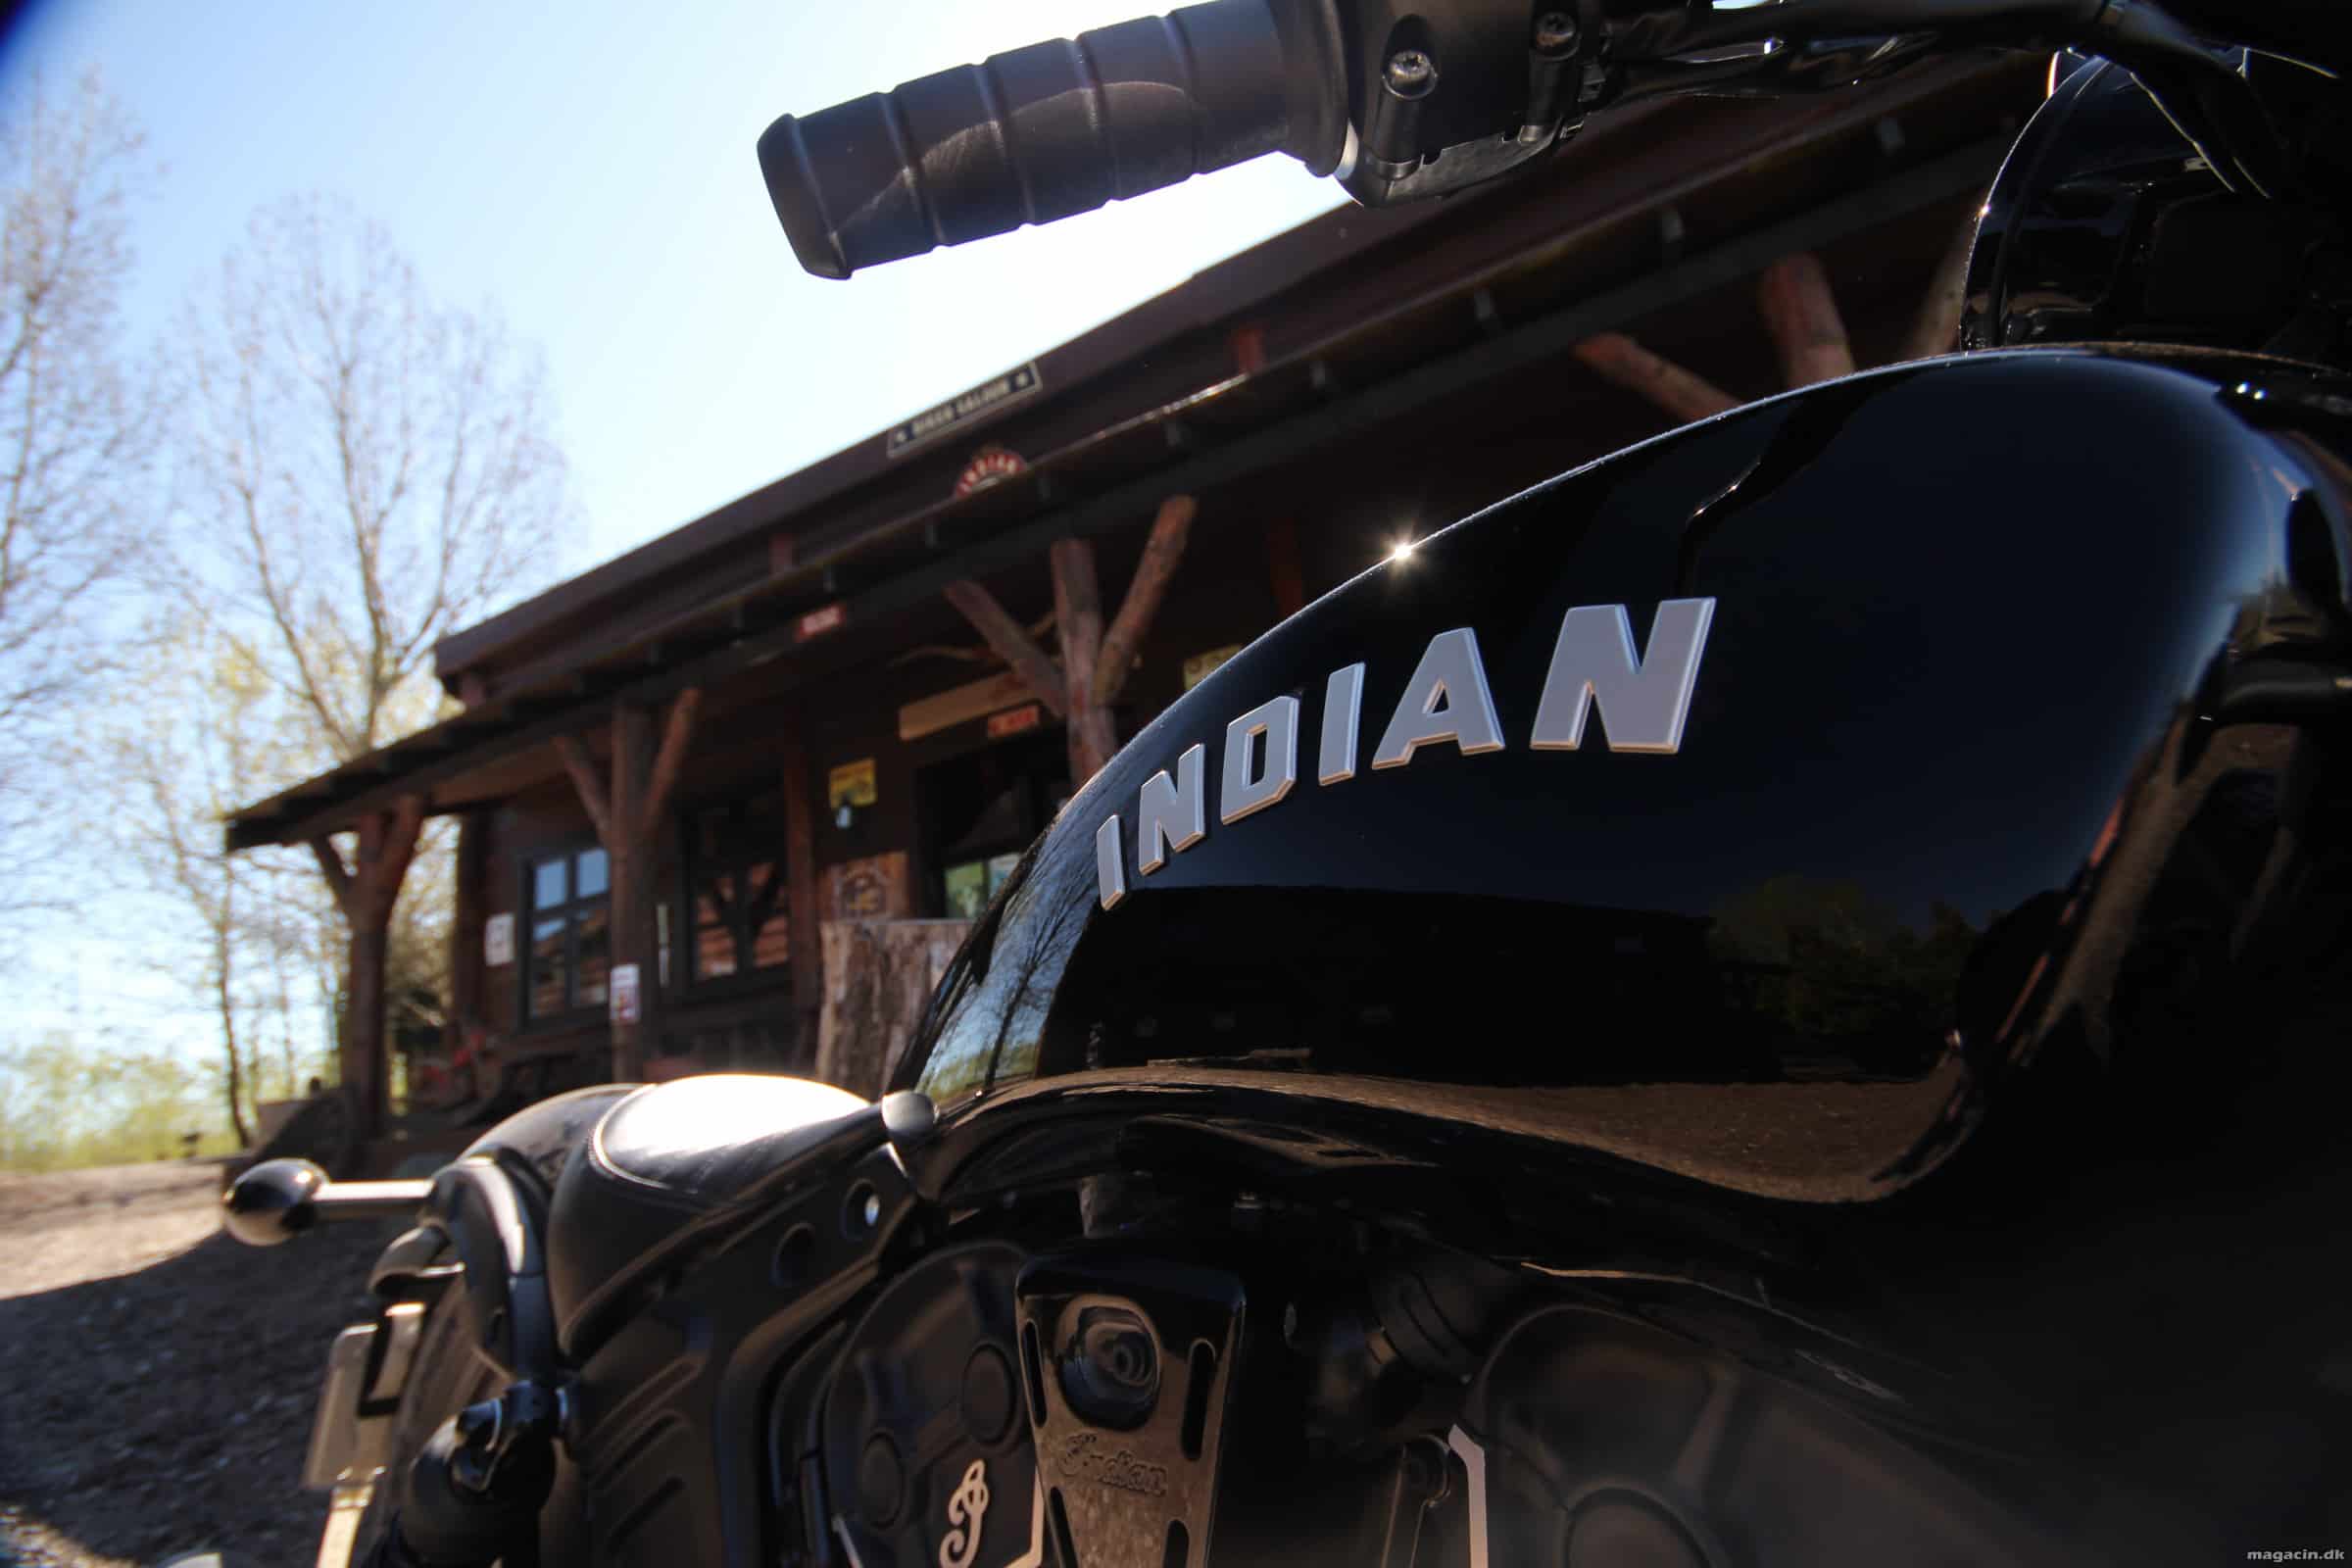 Prøvekørt: 2020 Indian Scout Bobber Sixty – Lækker lyd og køreegenskaber